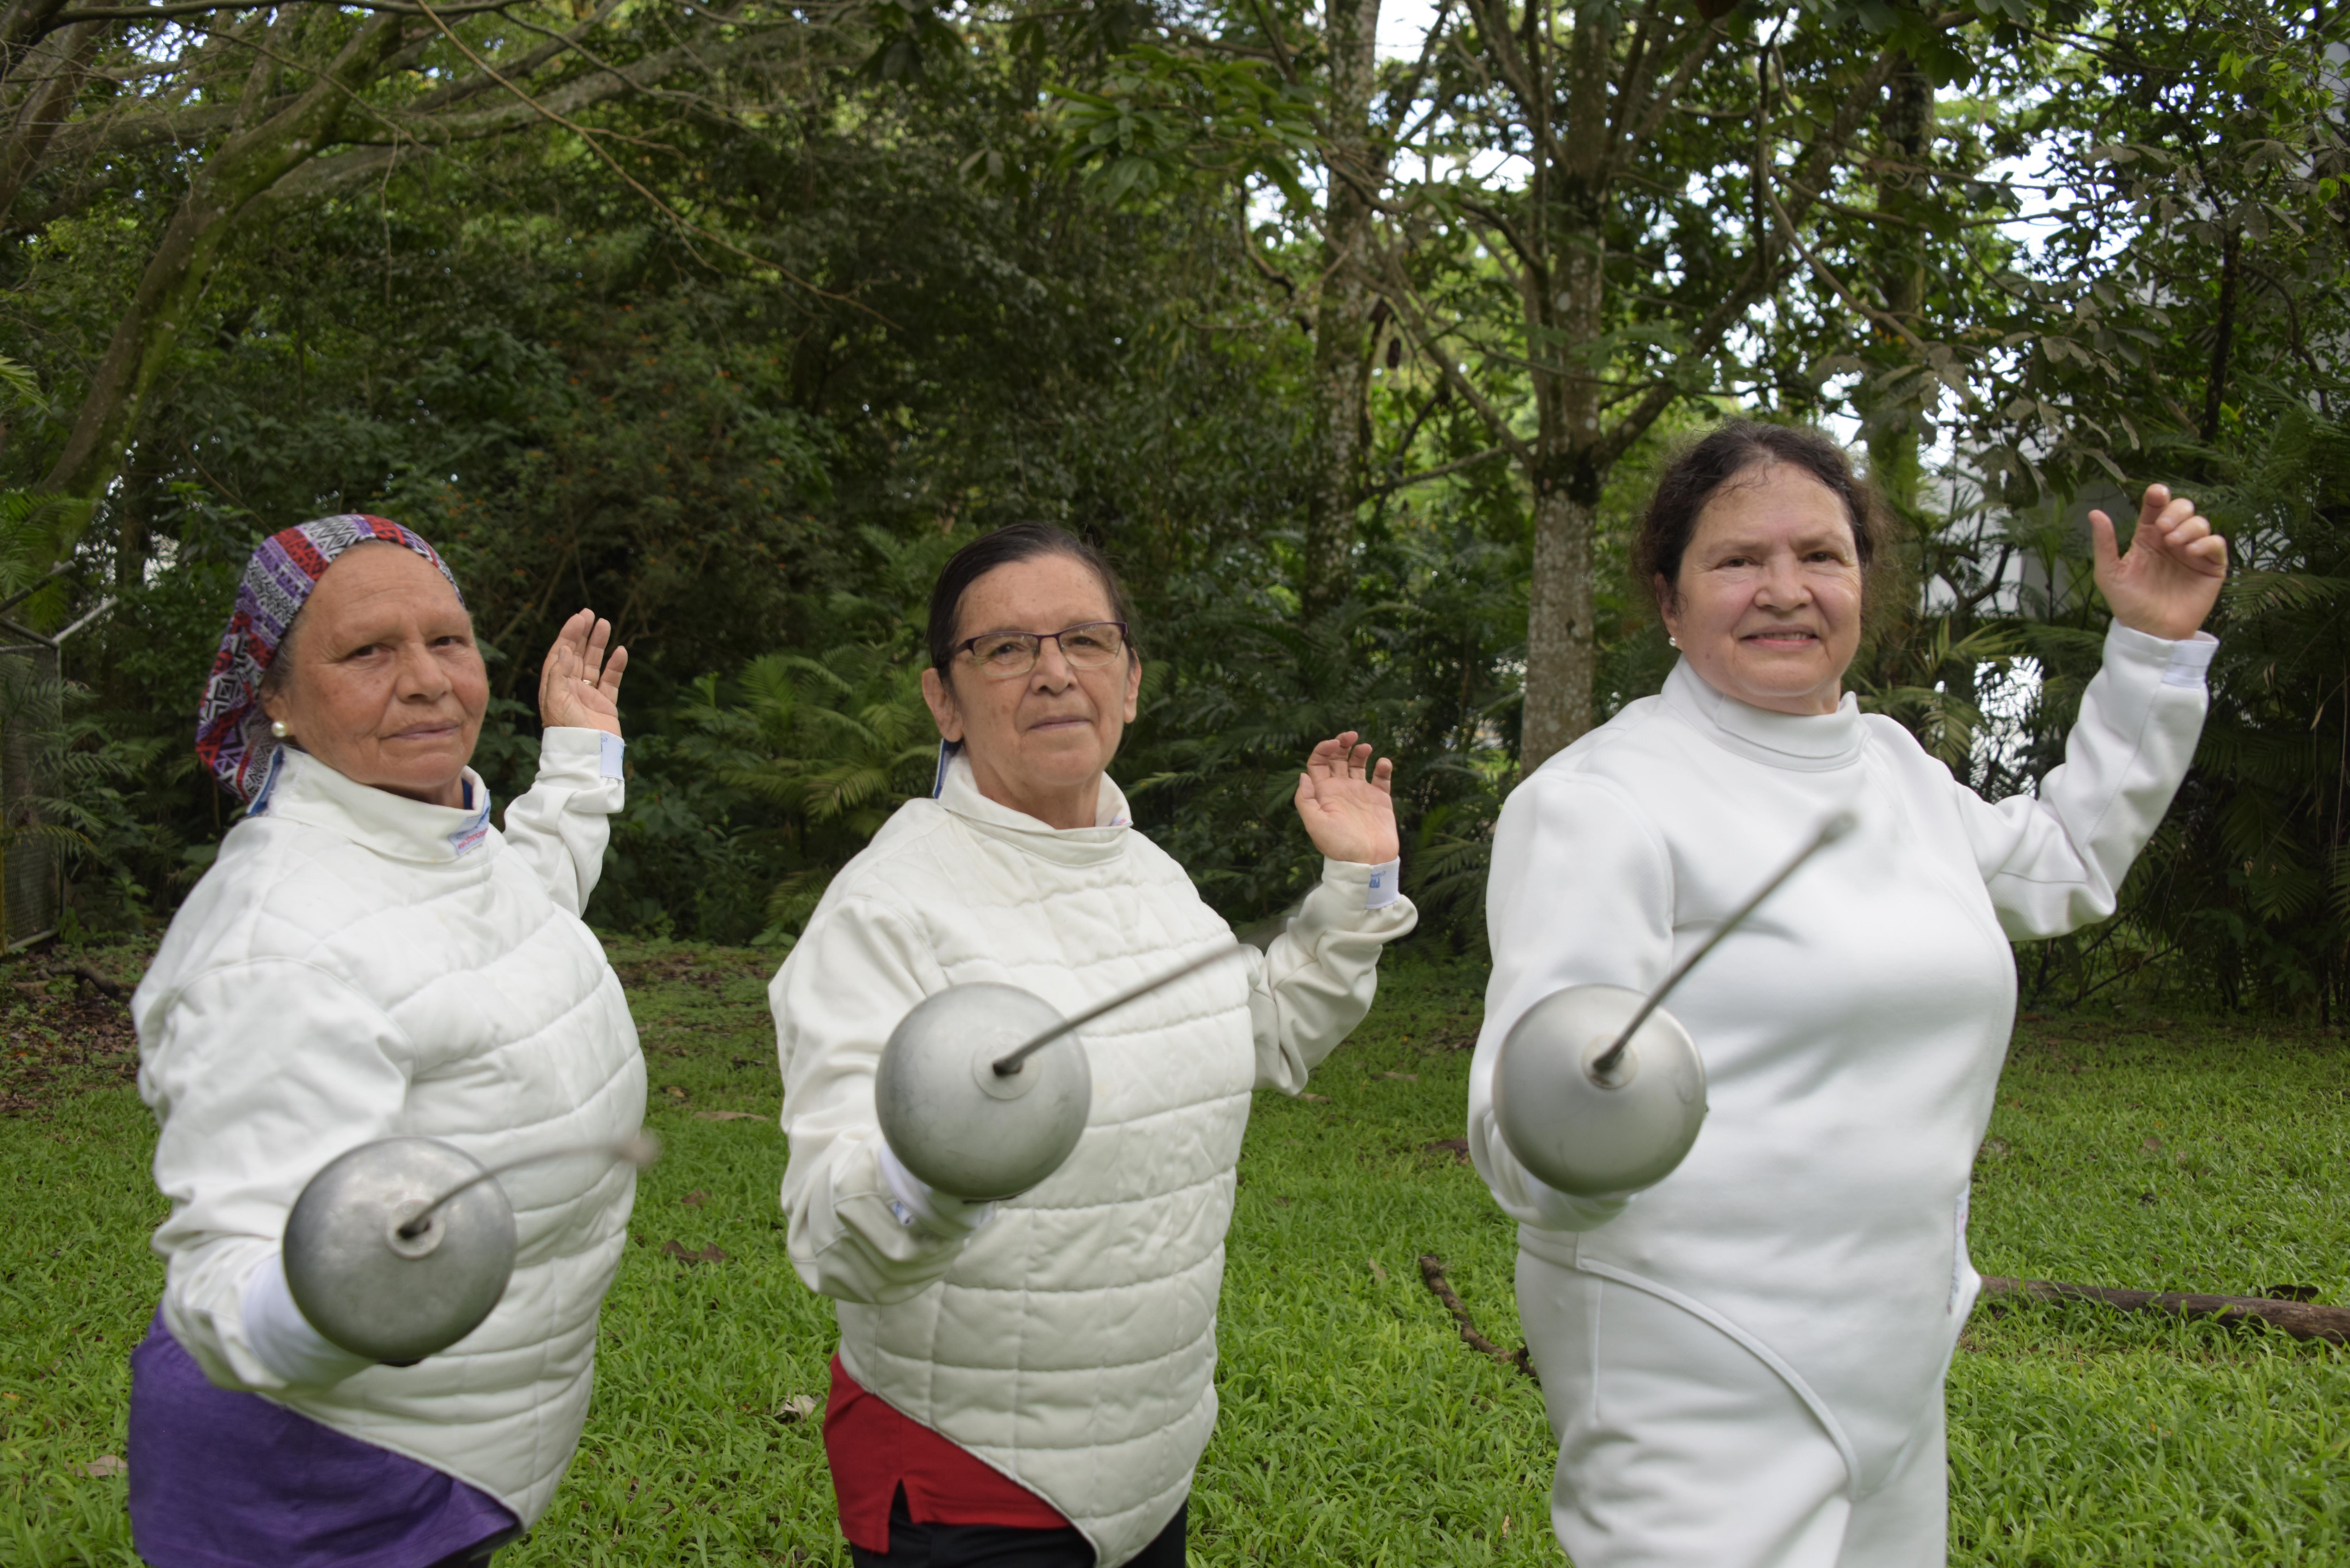 María Luz Barquero Carvajal, Lorena Quirós Calderón y Adriana Garrido Quesada asisten a las clases de Esgrima del PIAM. Foto por Anel Kenjekeeva Sancho.